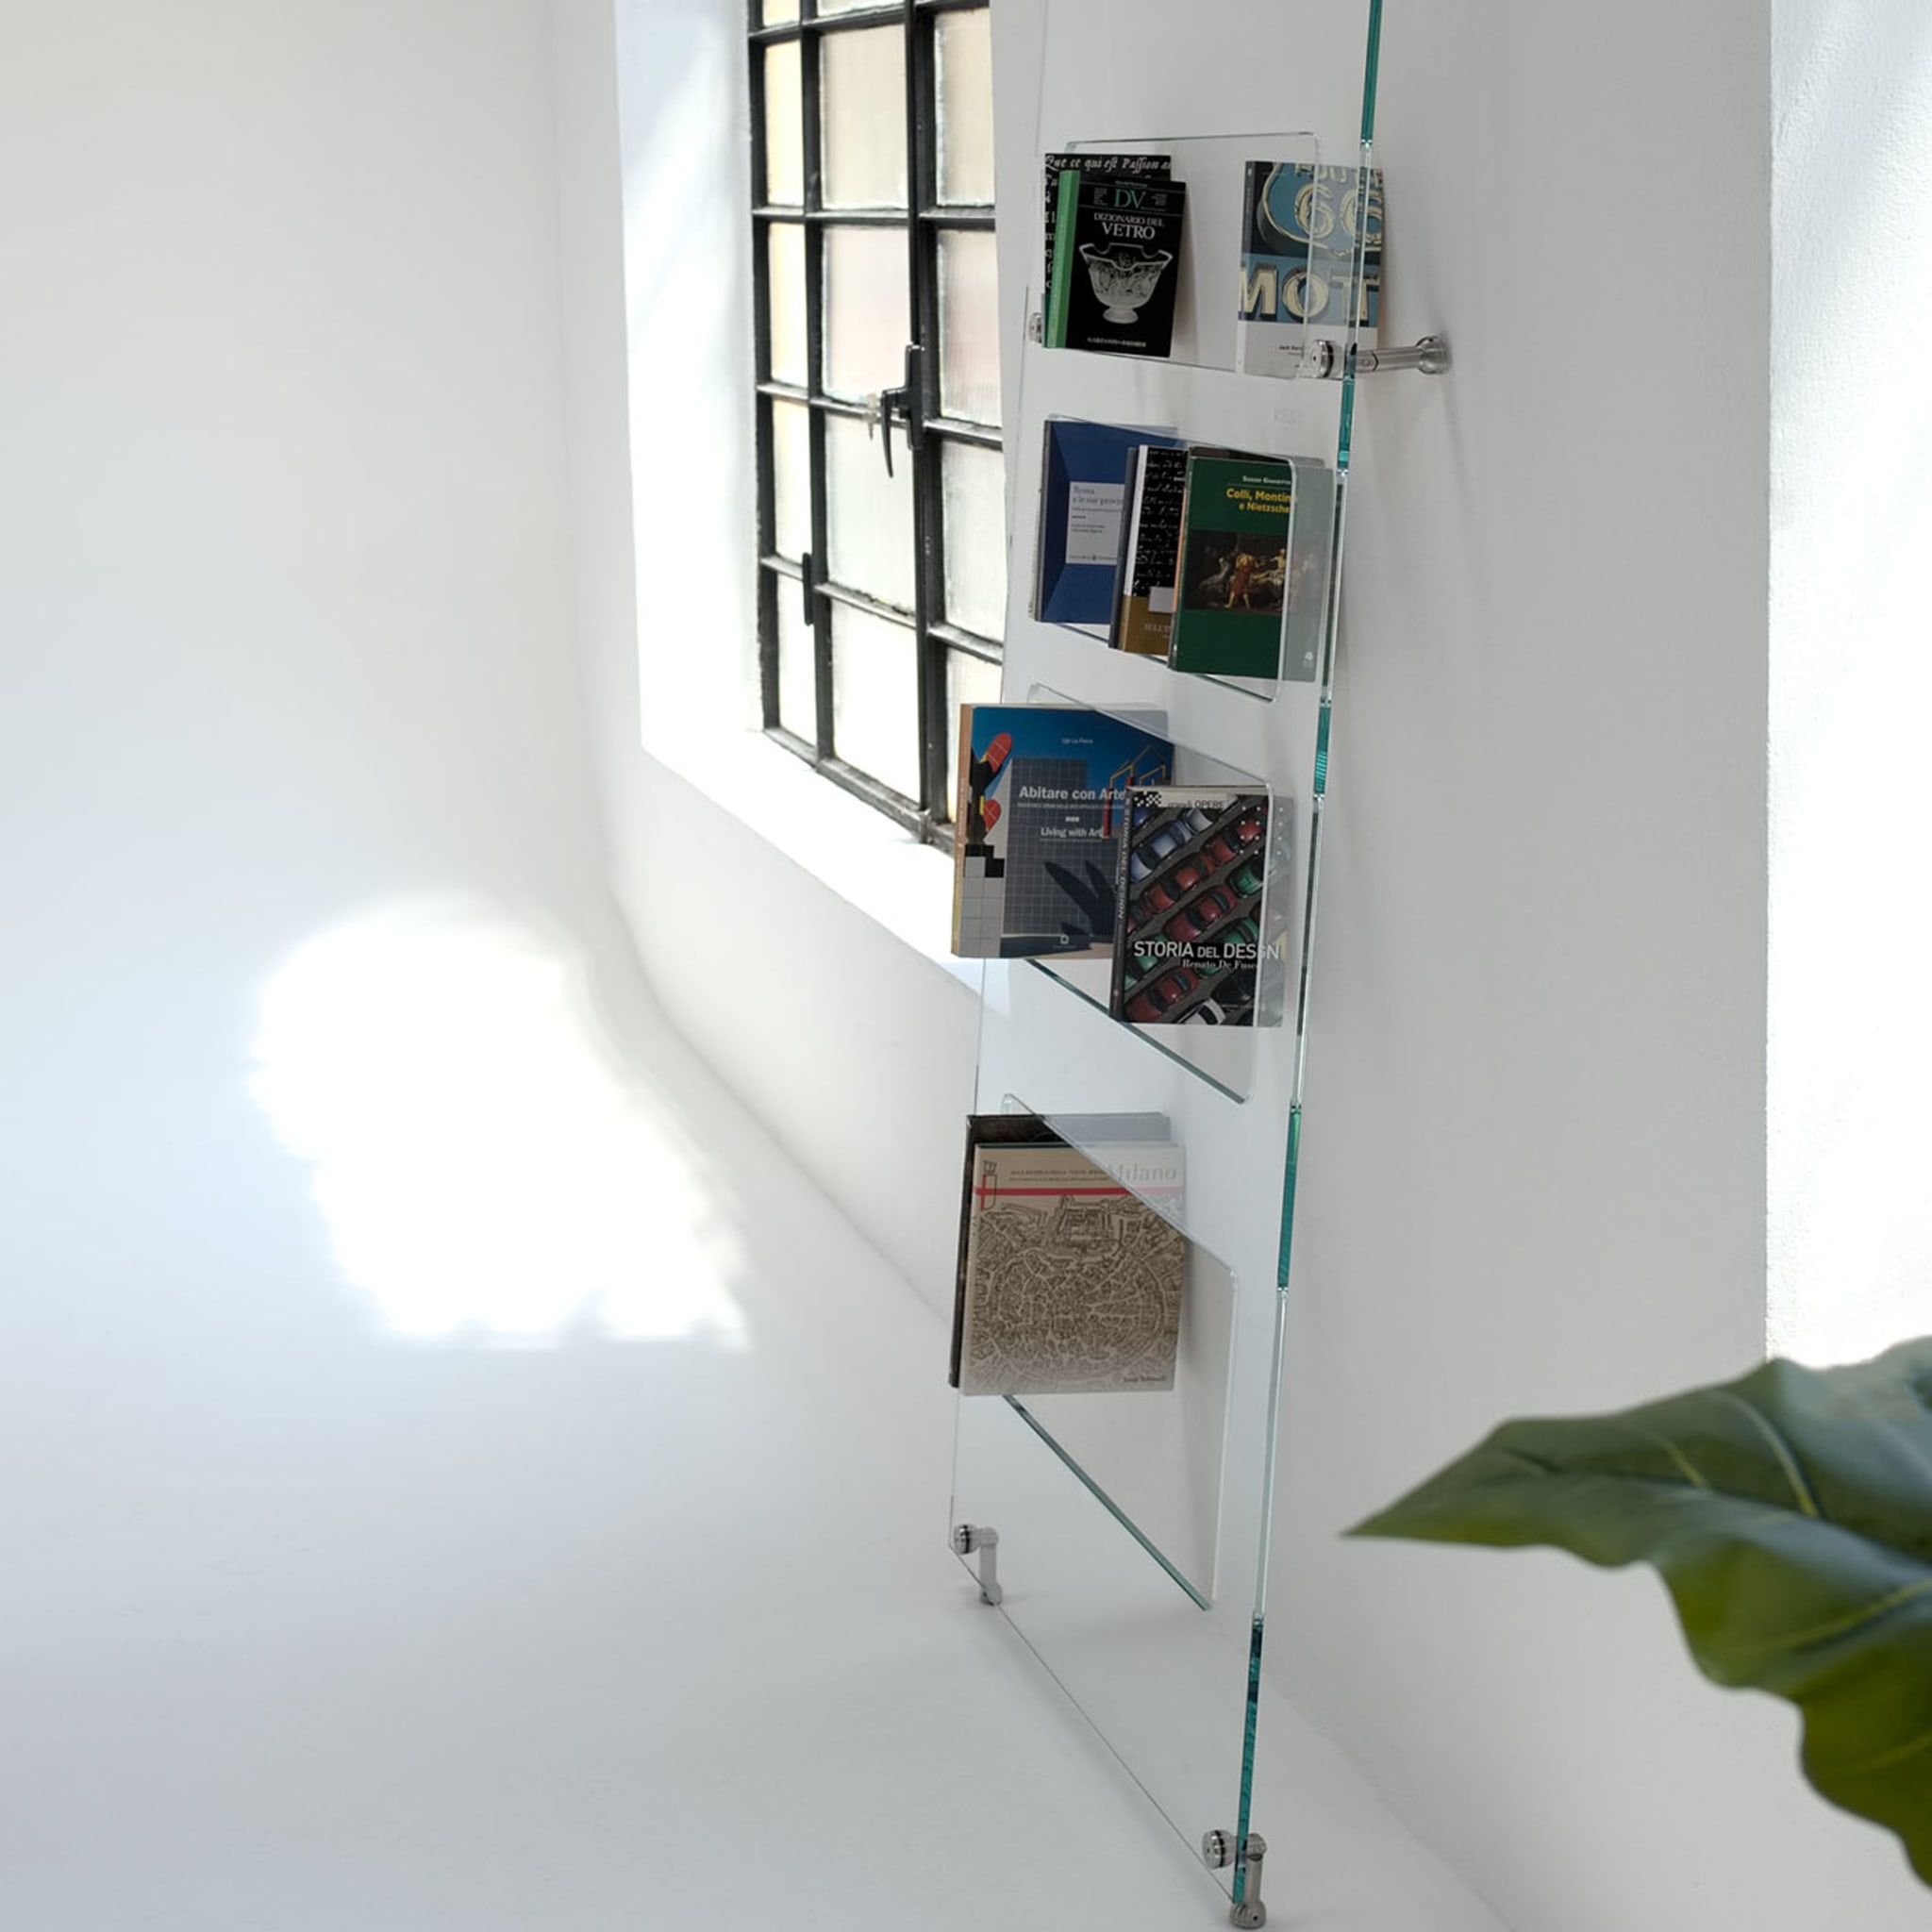 Sintesi Bookcase by Andrea Petterini - Alternative view 2